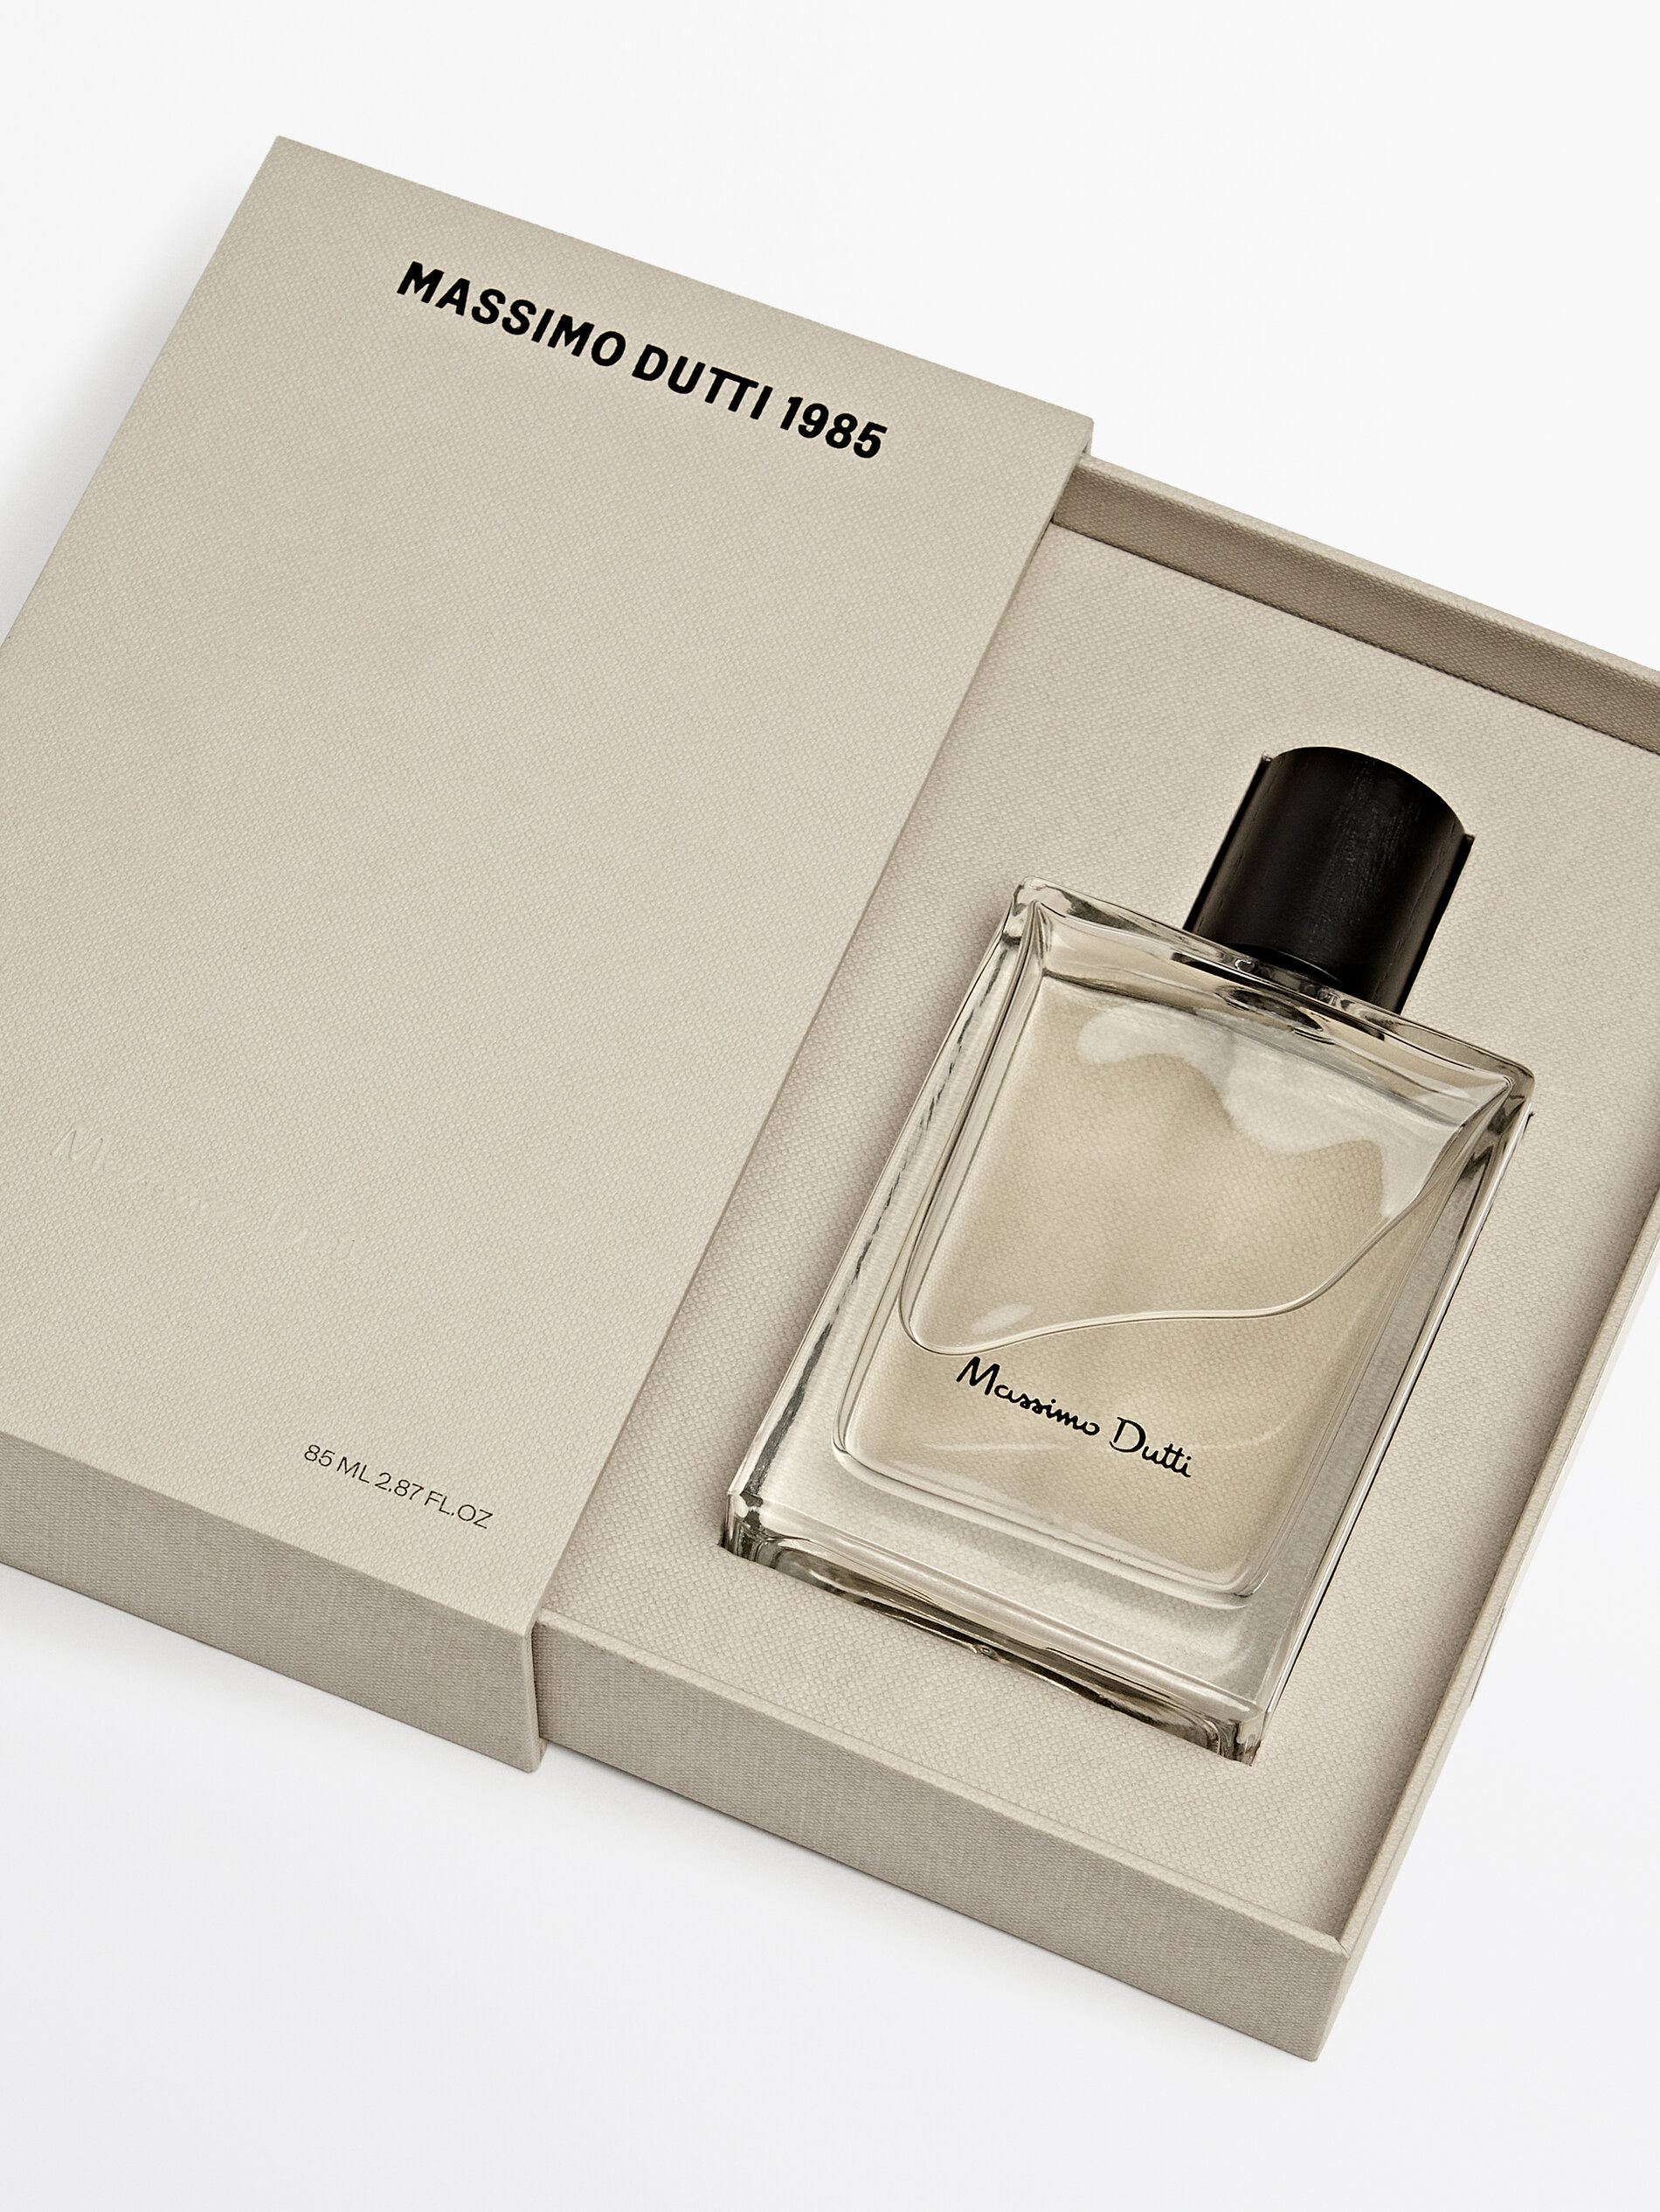 (85 ml) 1985 Eau de Parfum